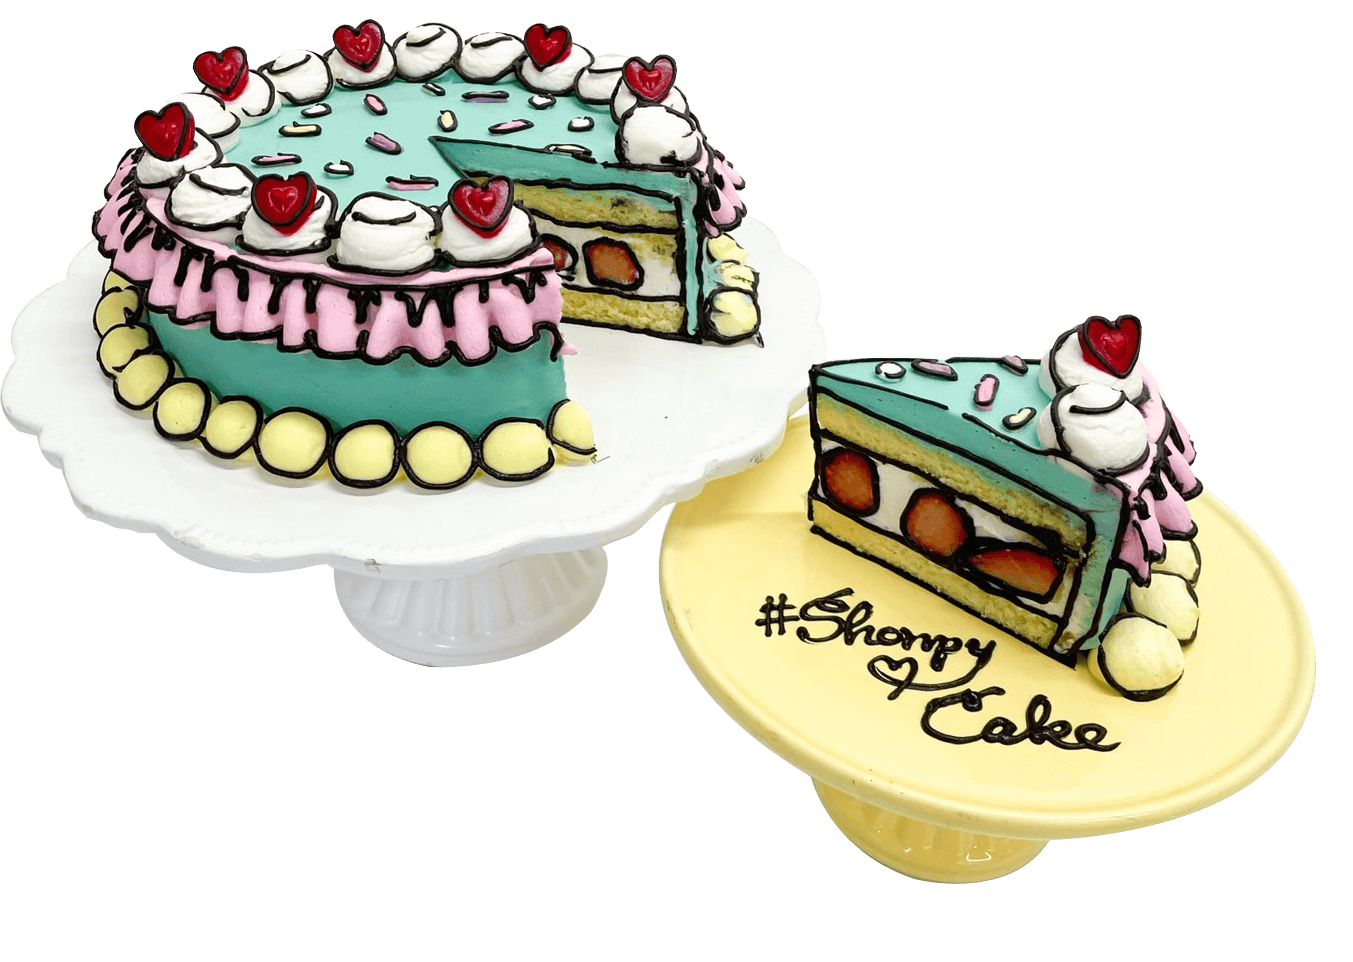 Shonpy Cake(しょんぴぃケーキ)の『2Dケーキ』